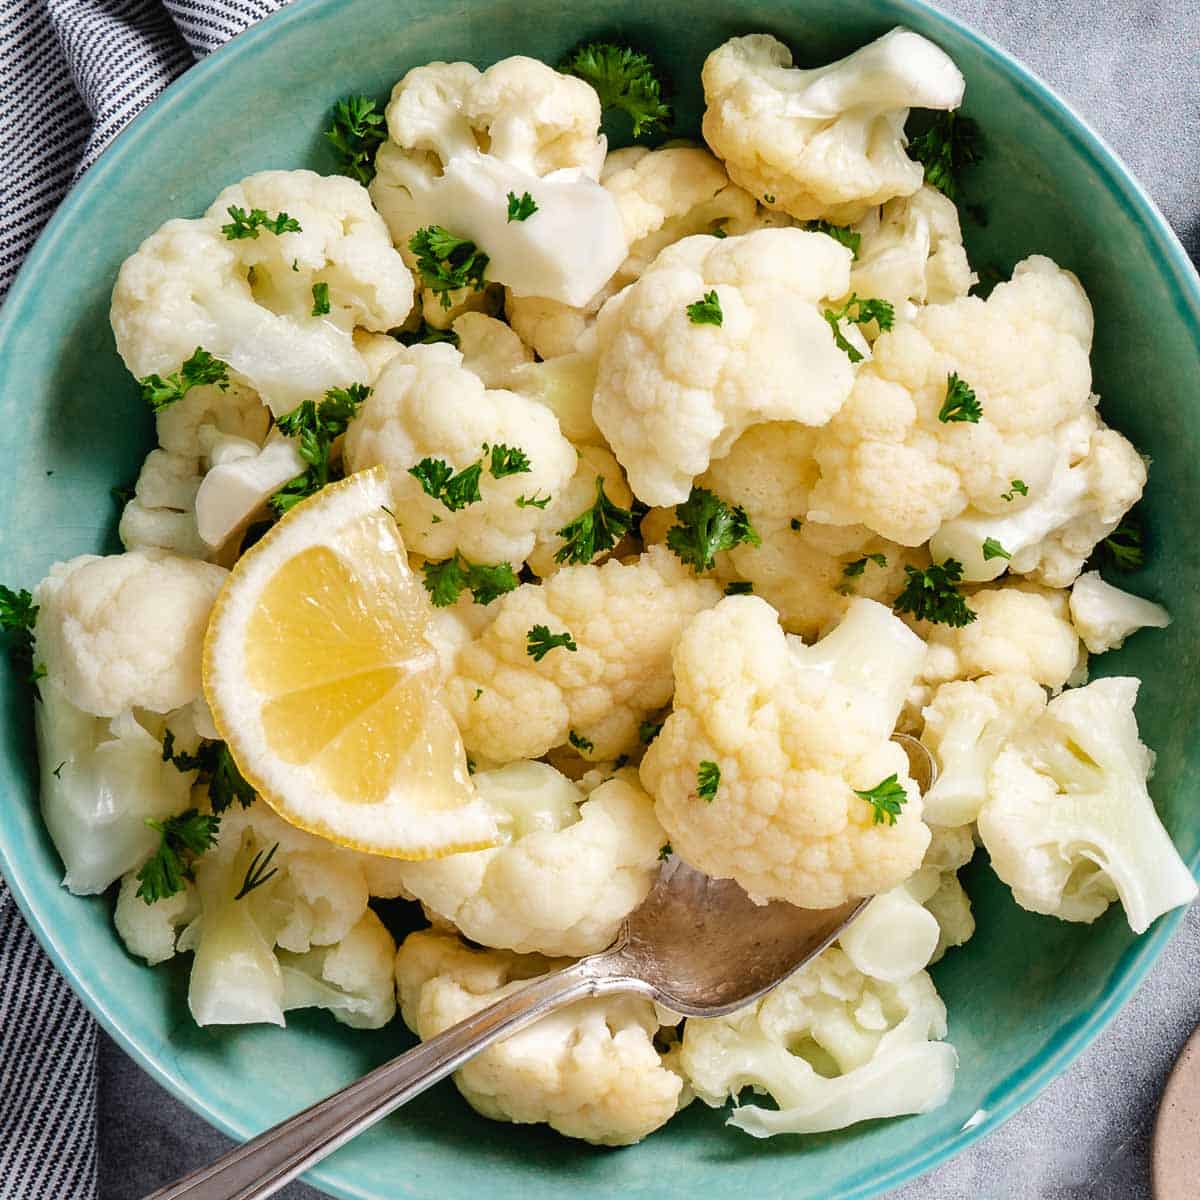 Best Ways To Cook Cauliflower